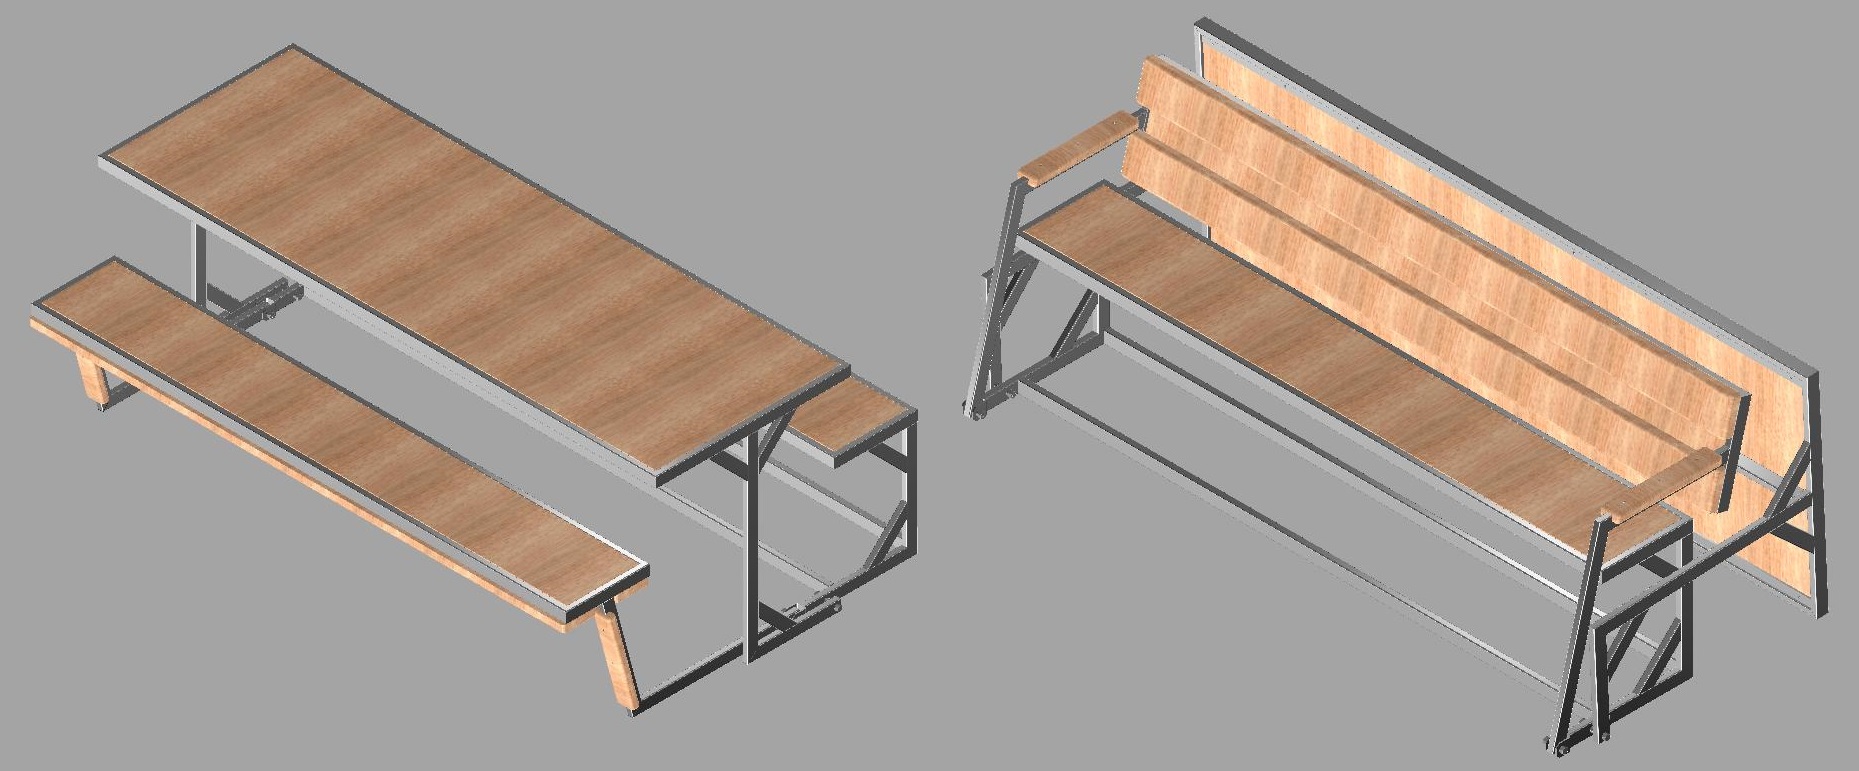 Скамейка-трансформер - Чертежи, 3D Модели, Проекты, Интерьер и мебель